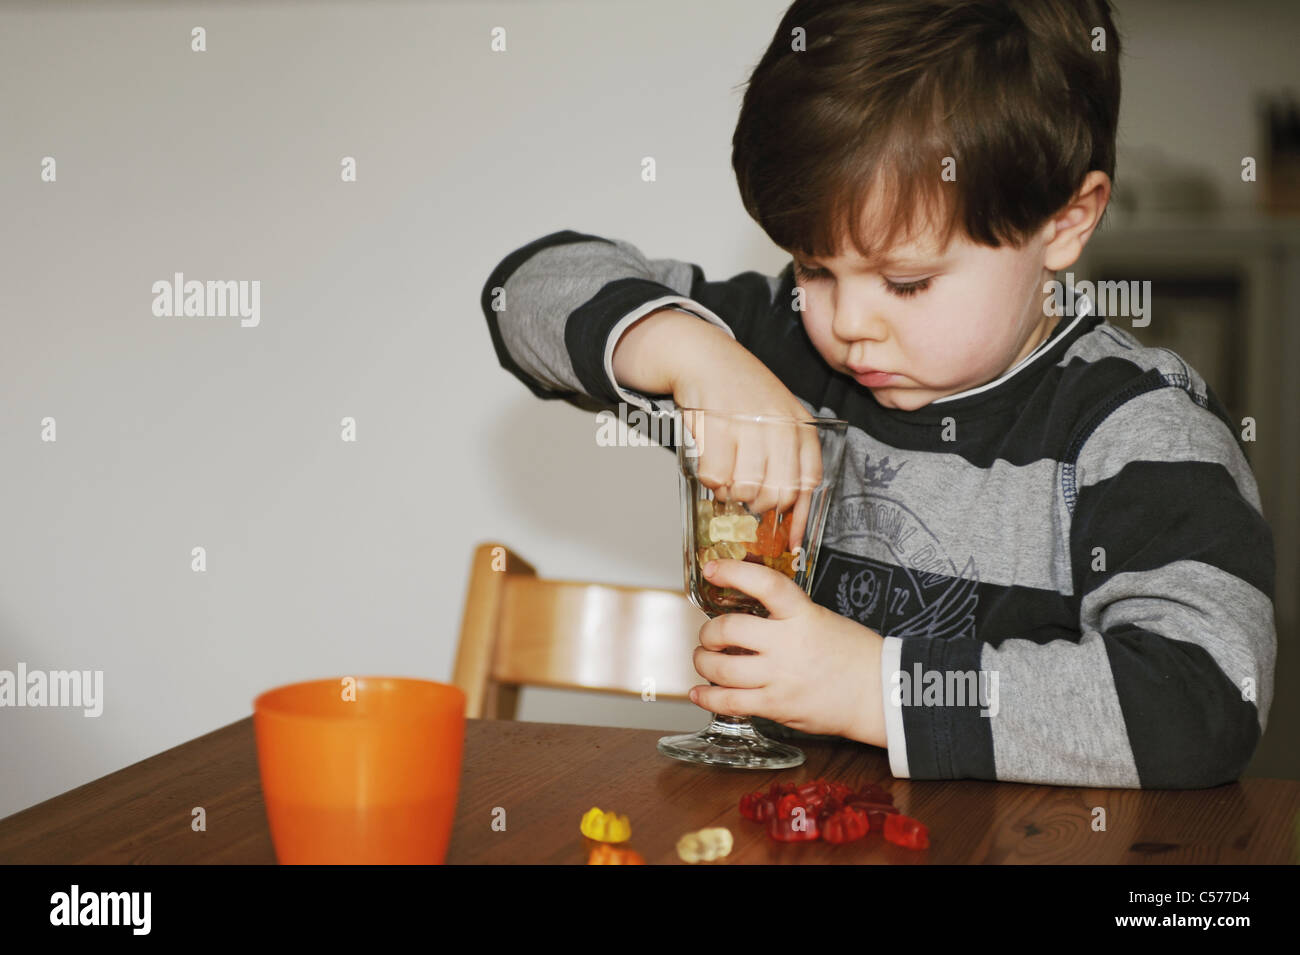 Junge mit Süßigkeiten am Tisch spielen Stockfoto